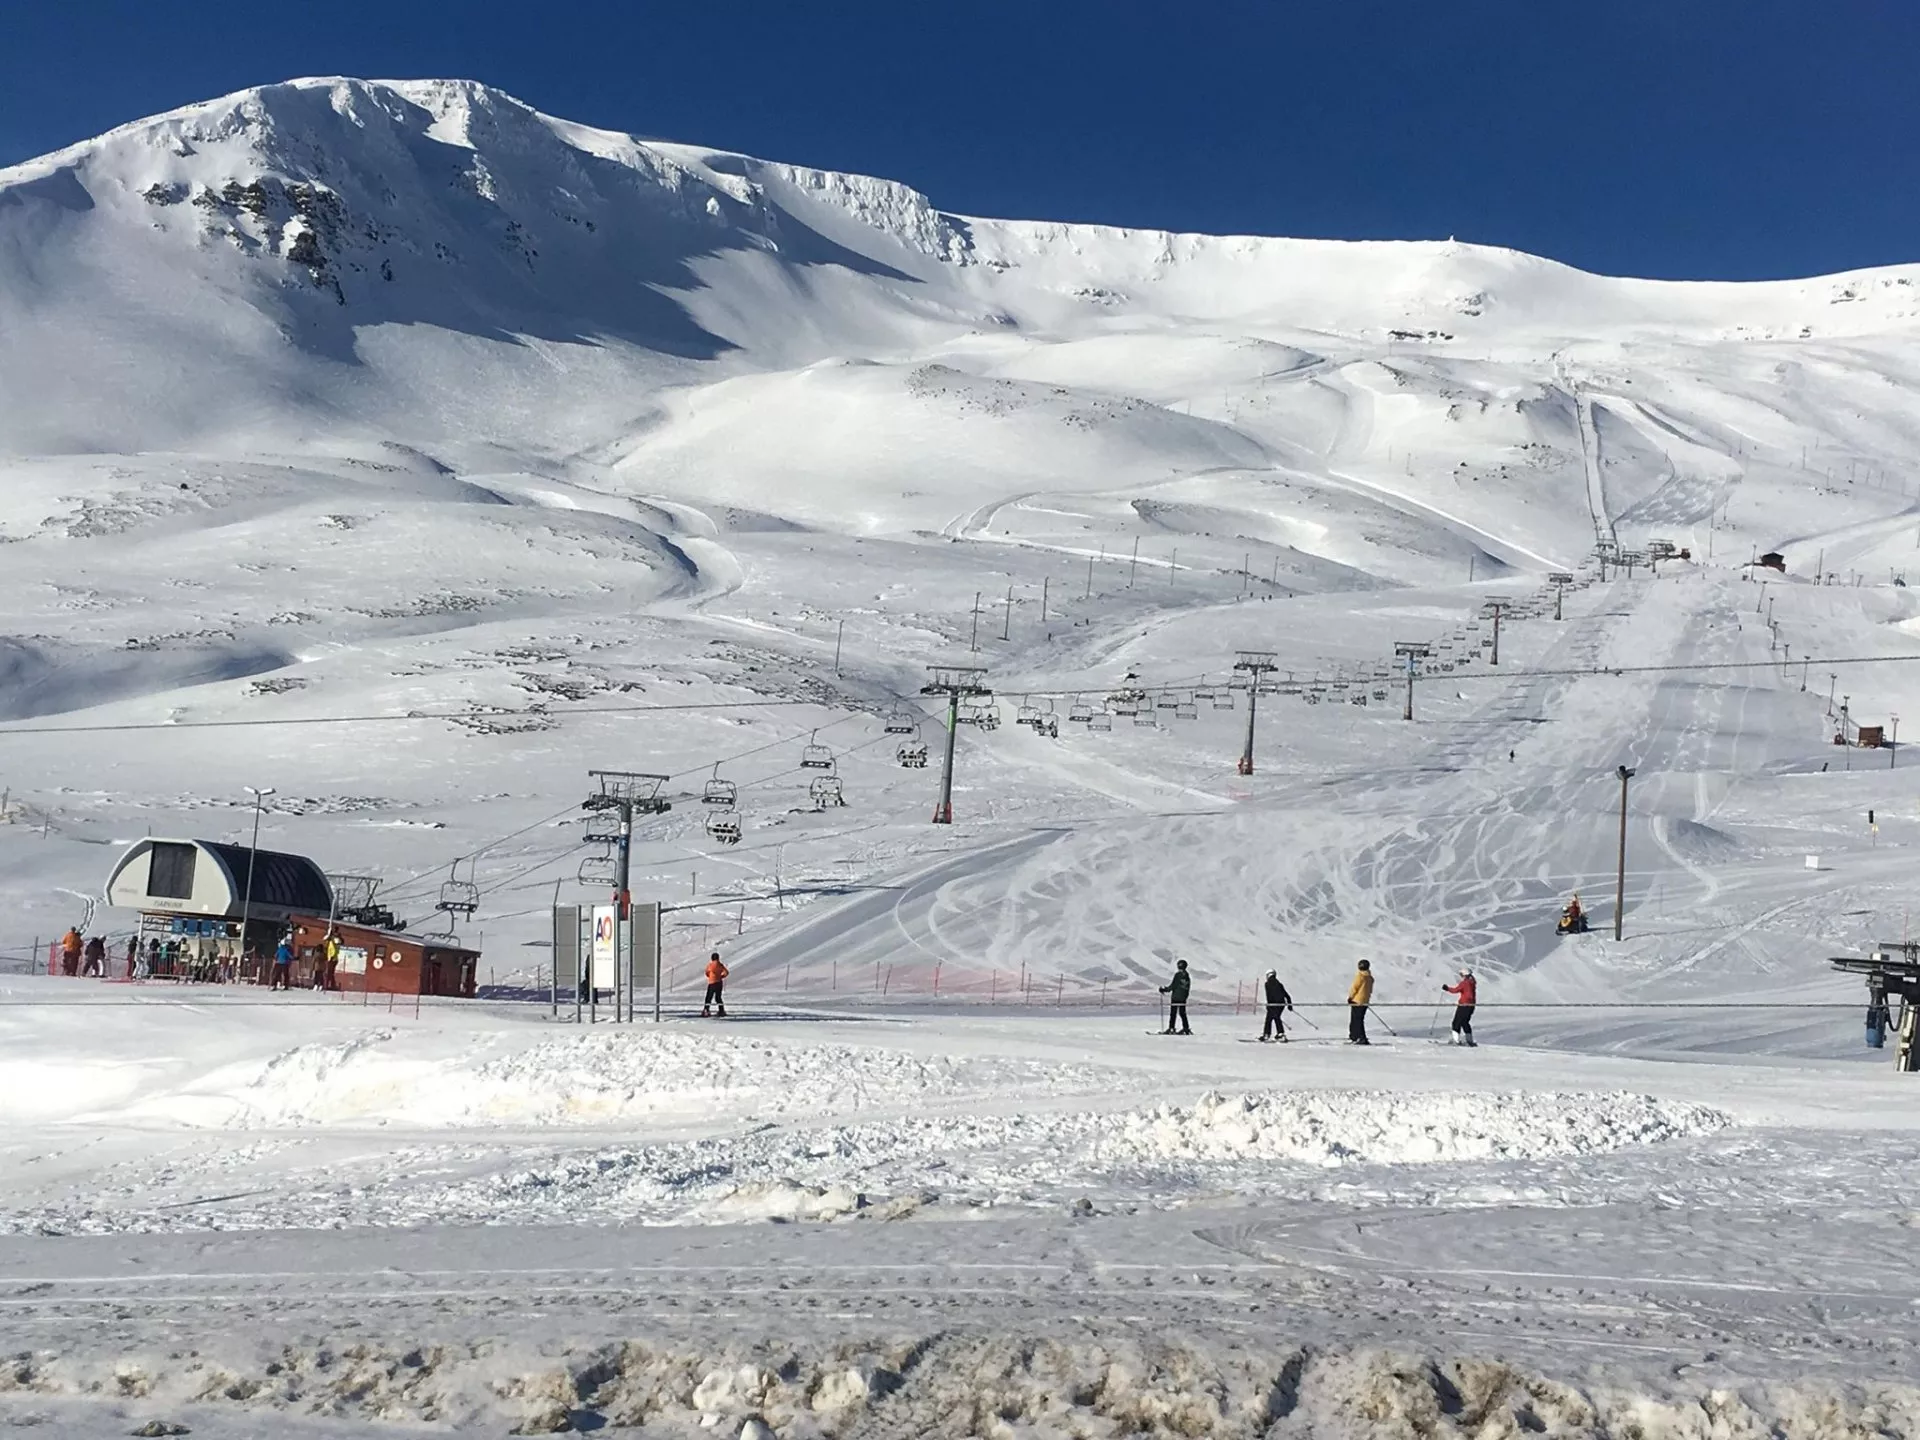 Hlidarfjall Akureyri in Iceland, Europe | Snowboarding,Mountaineering,Skiing - Rated 0.8